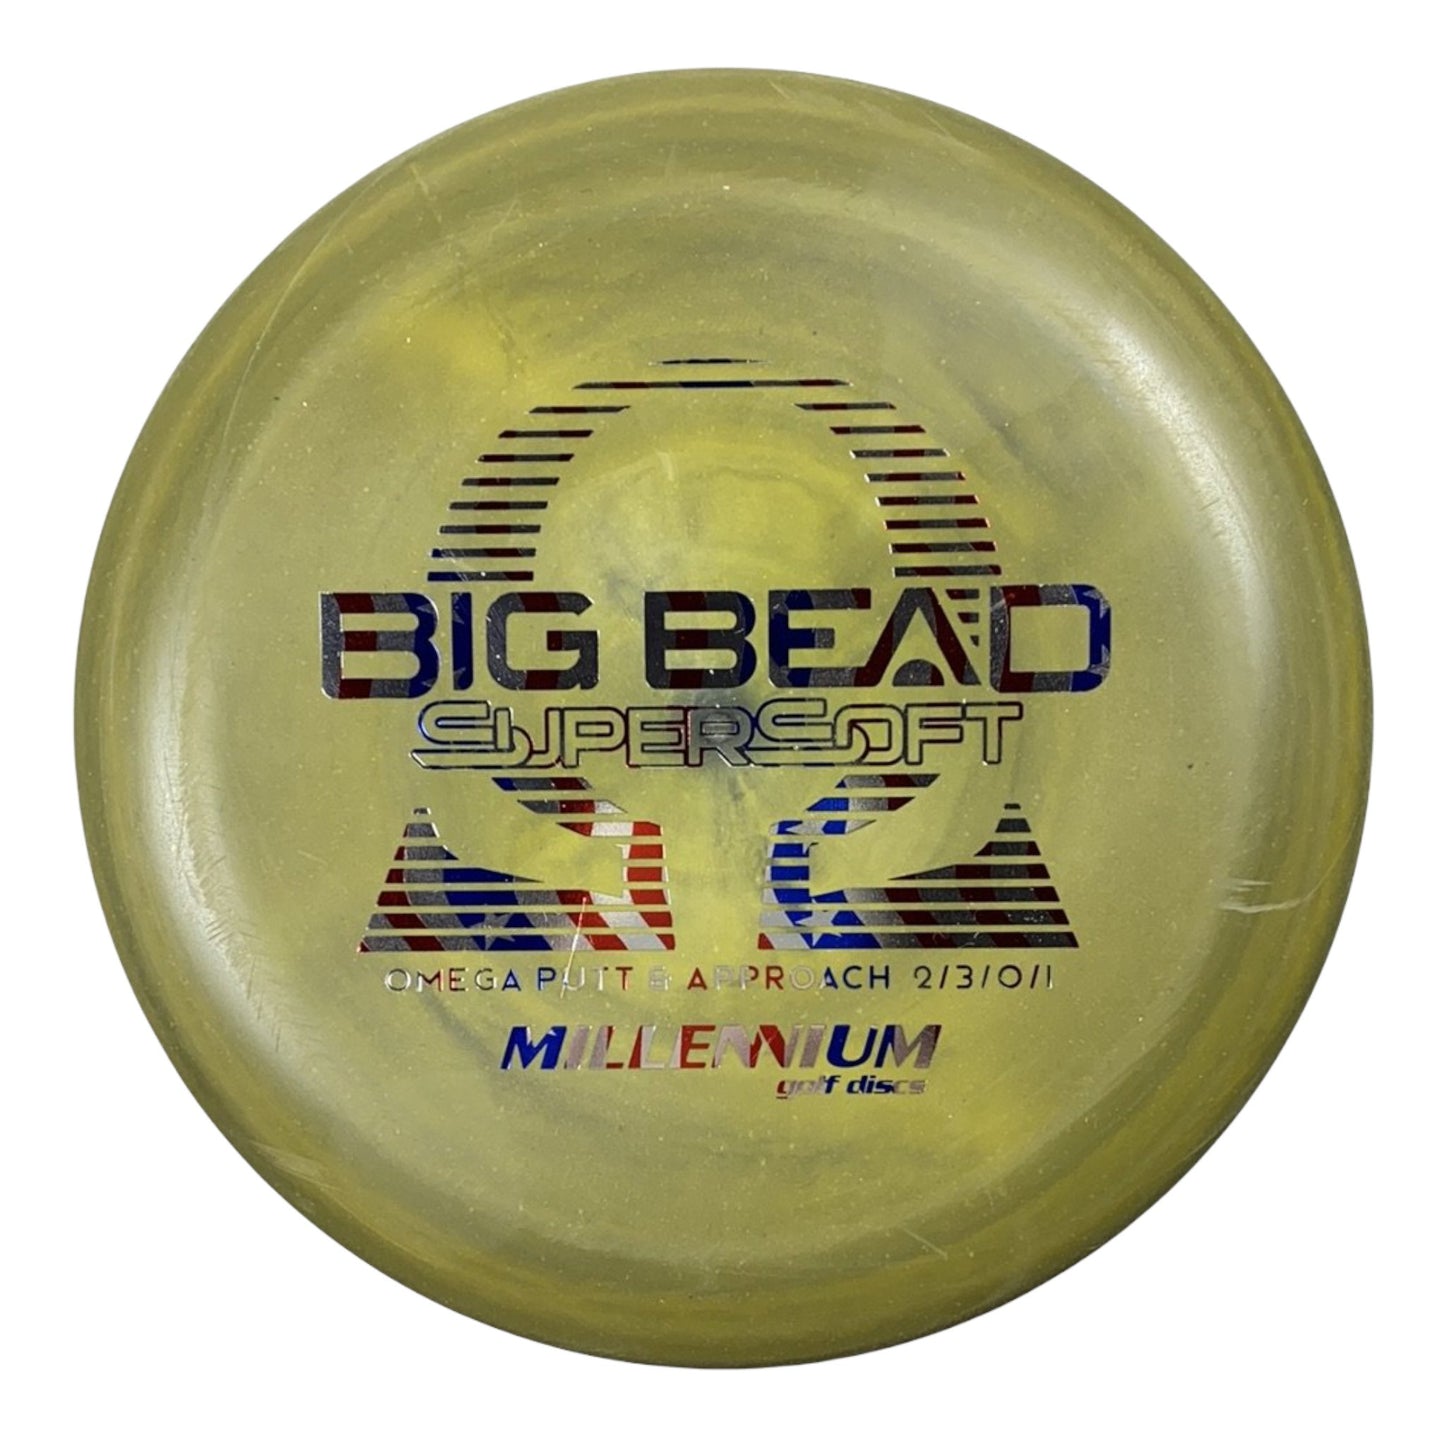 Millennium Golf Discs Omega Big Bead | Supersoft | Green/USA 170g Disc Golf